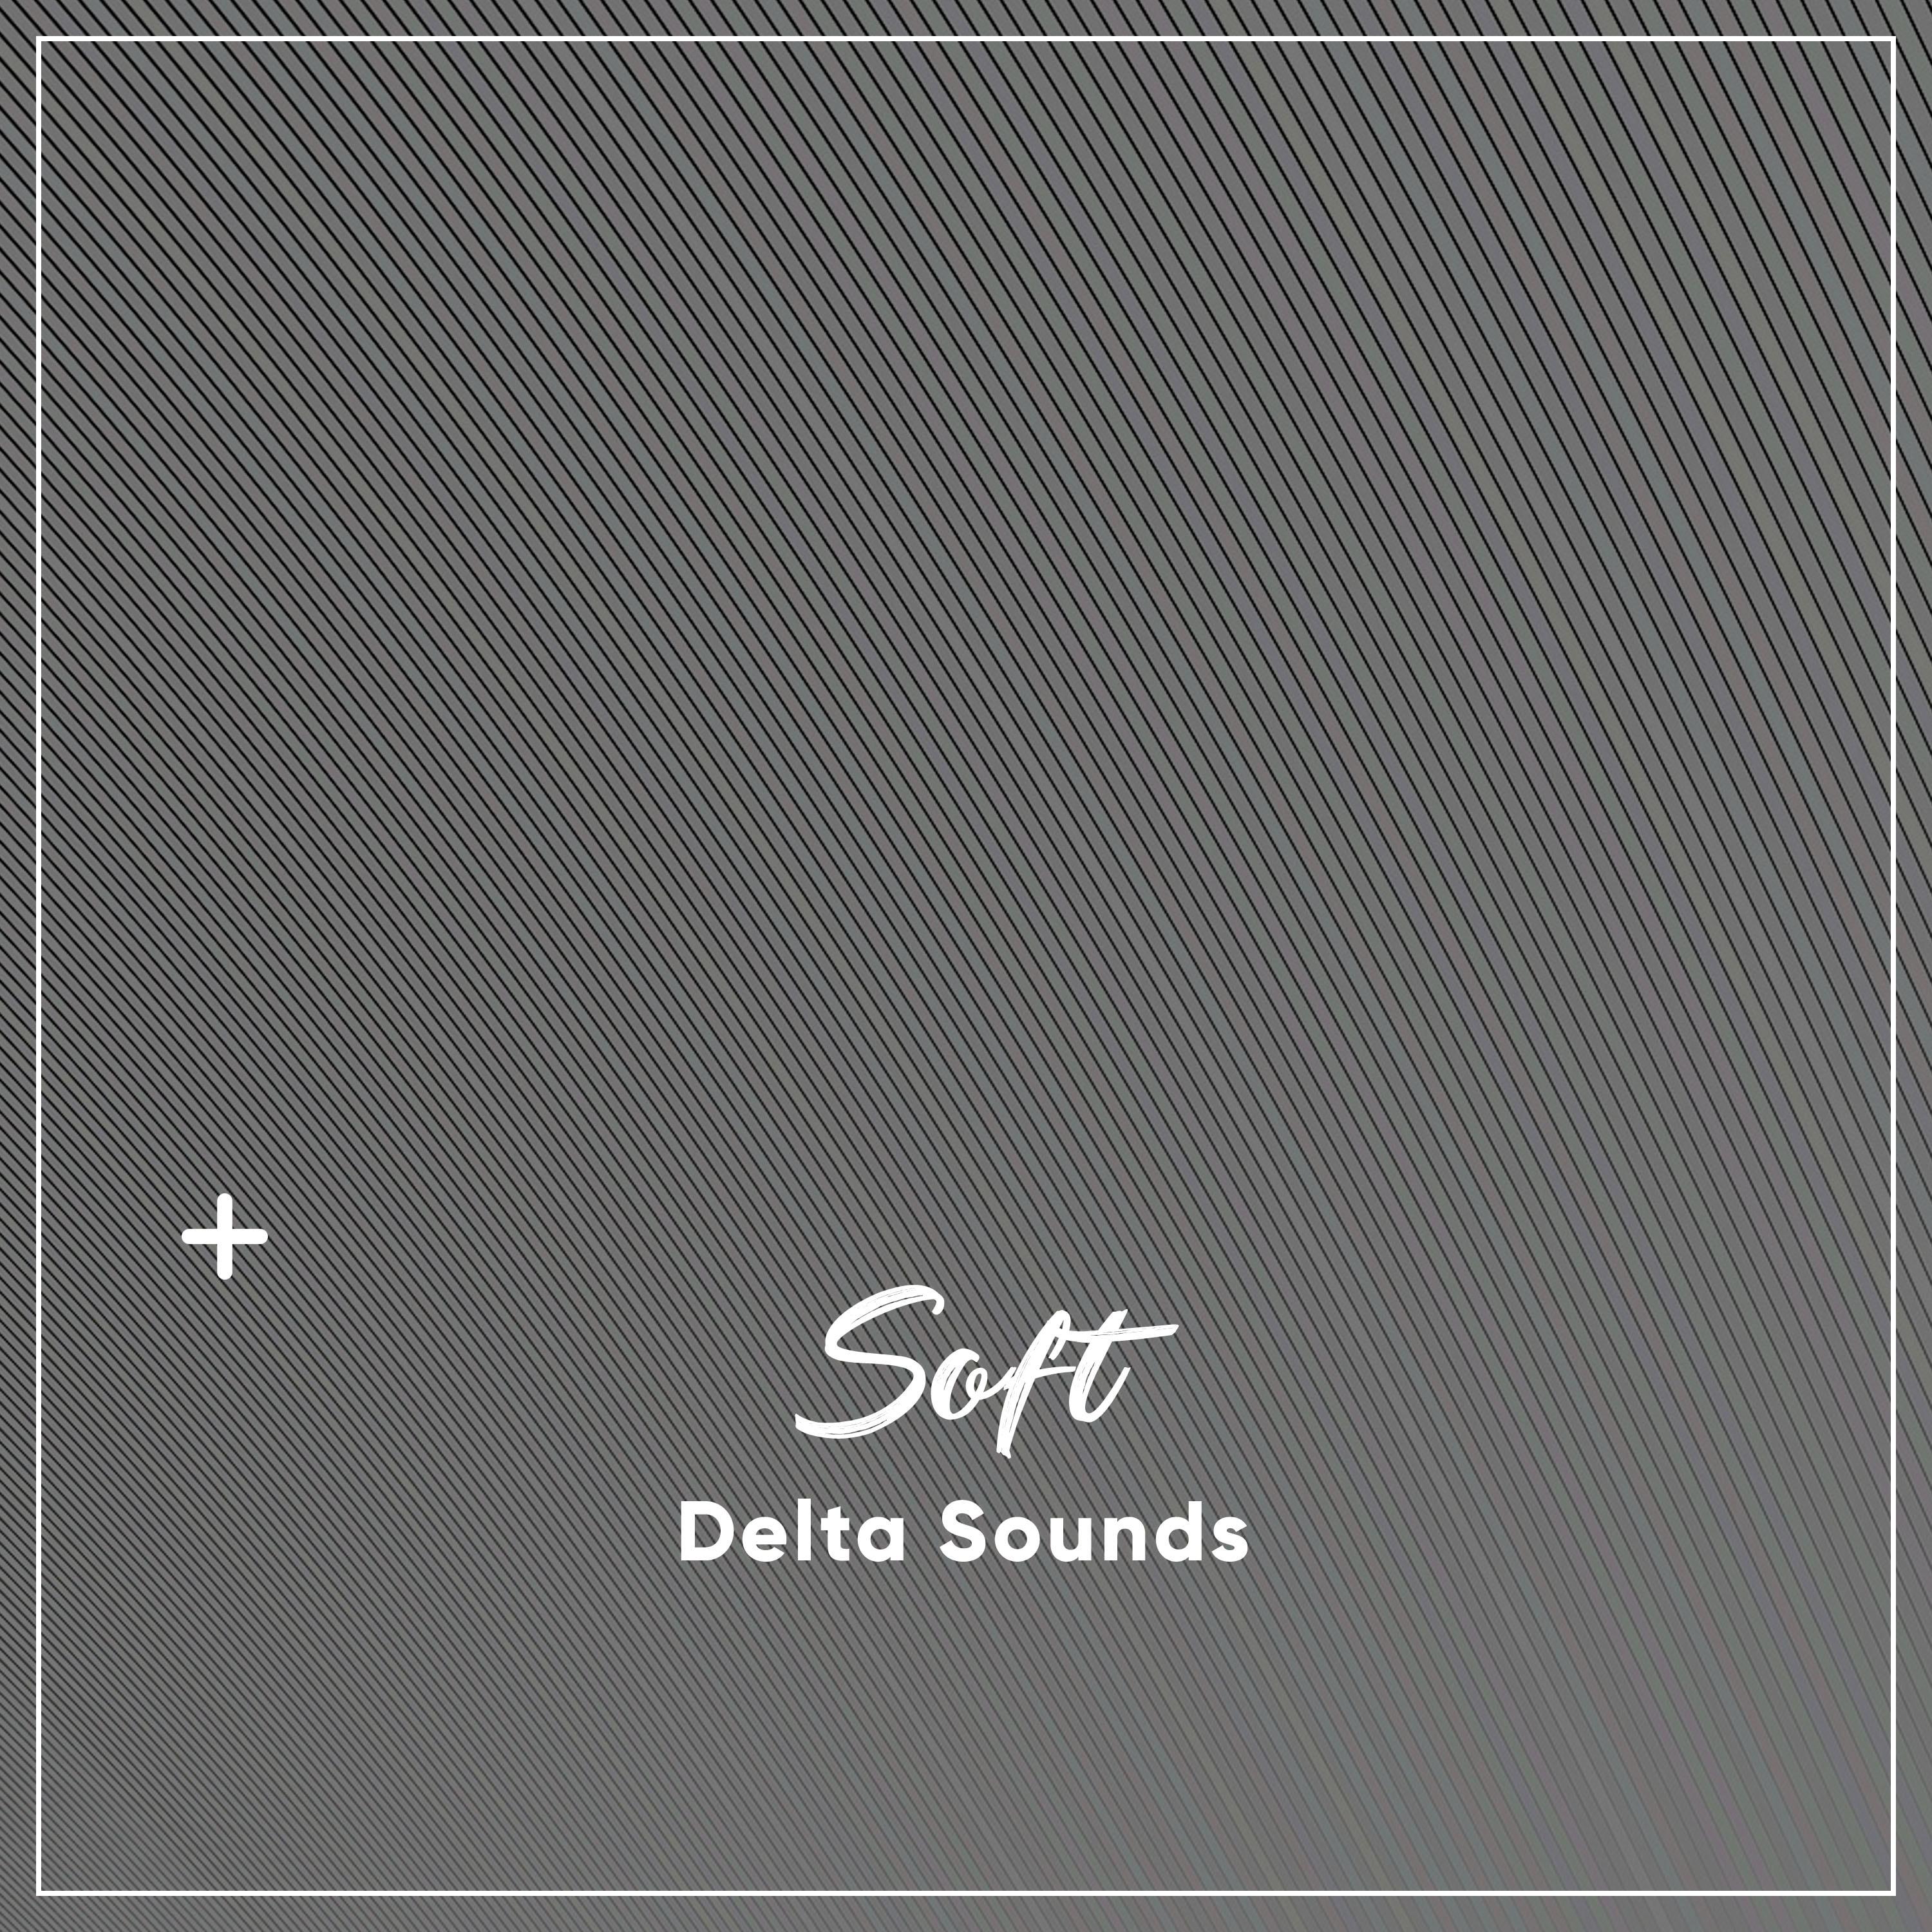 #9 Soft Delta Sounds